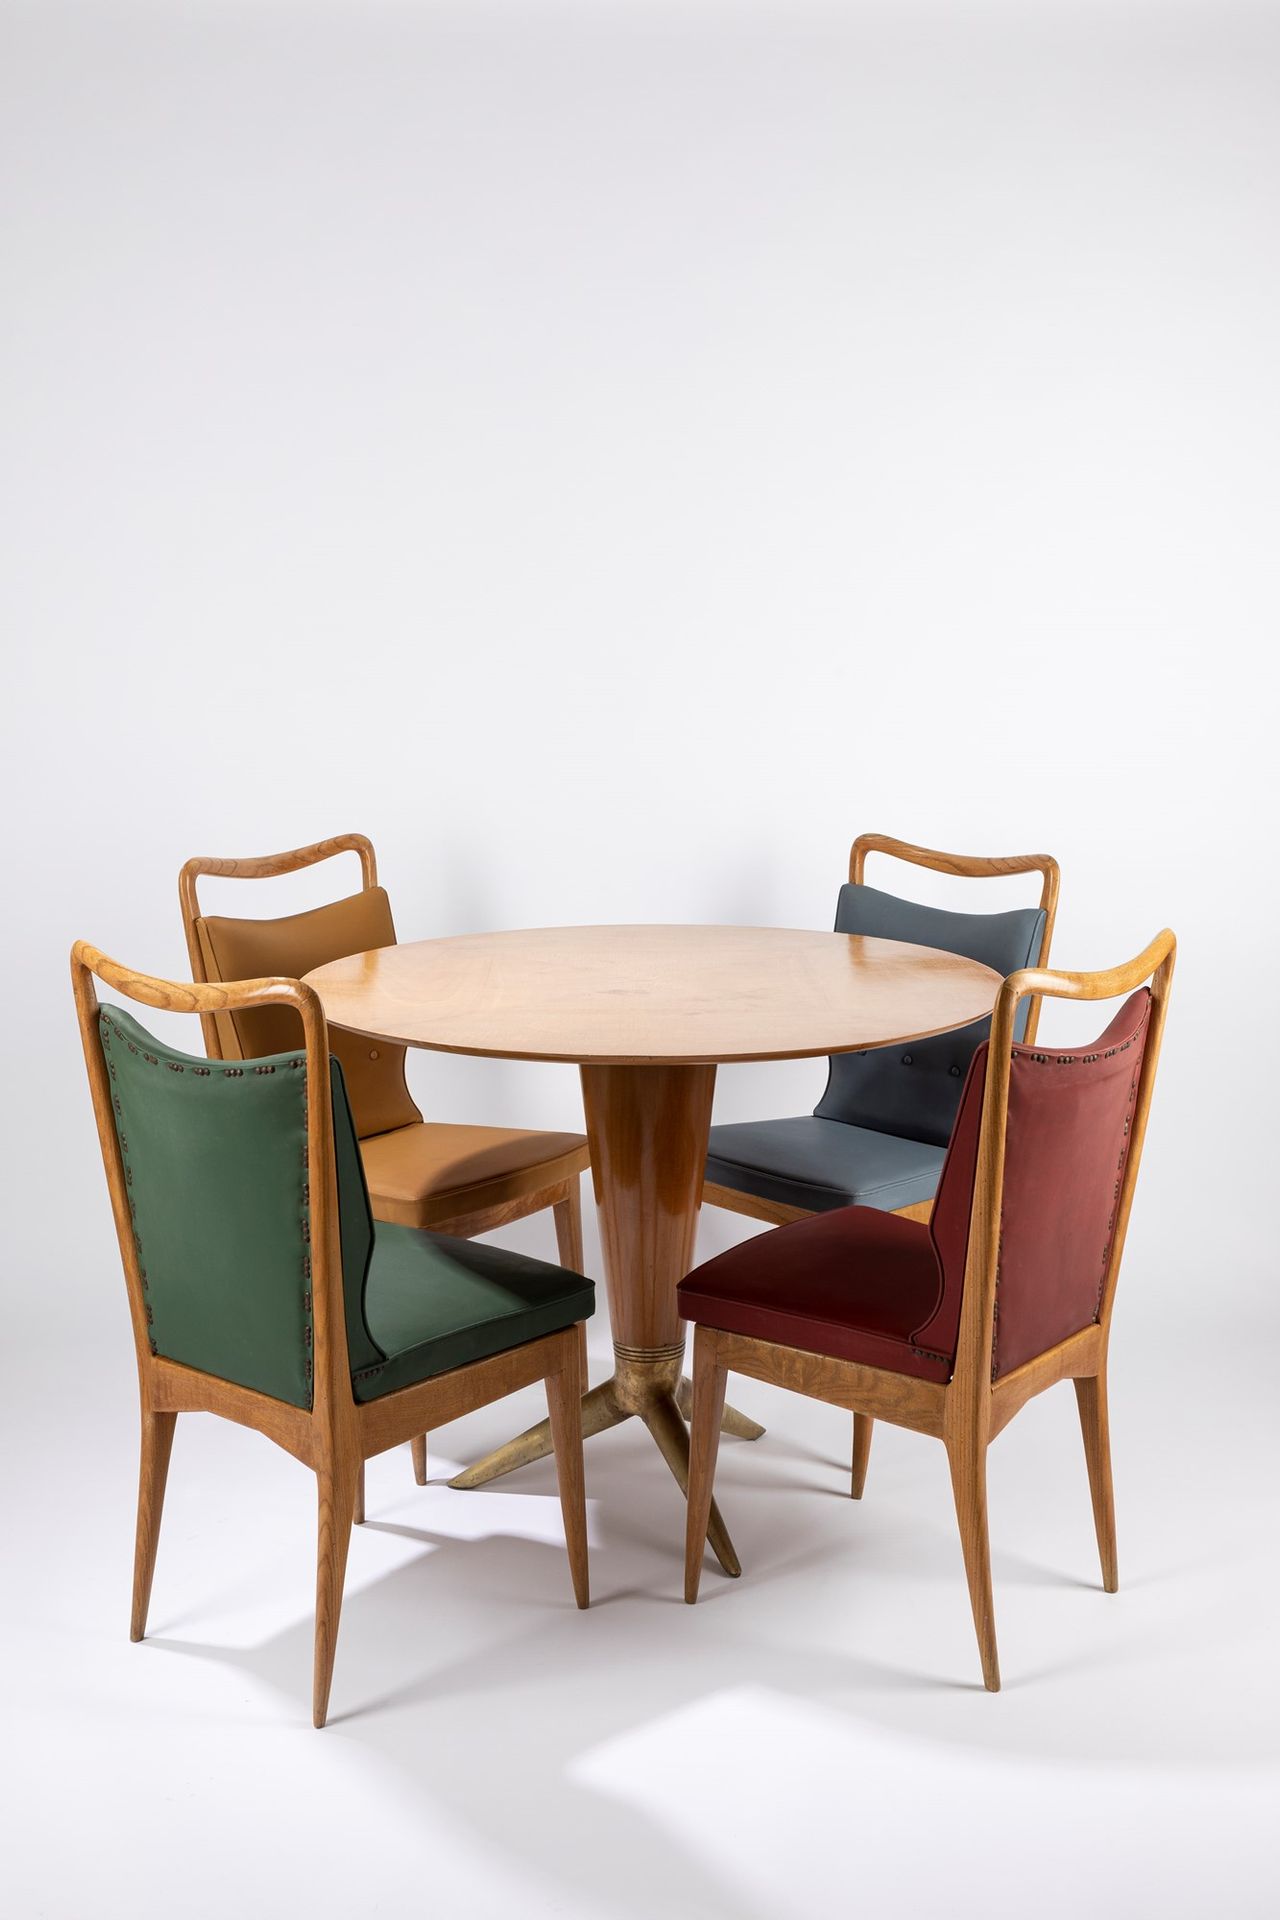 ISA, Bergamo Tisch und vier Stühle, 1950 ca.

Stühle 90 x 50 x 50 - Tisch 79 x 1&hellip;